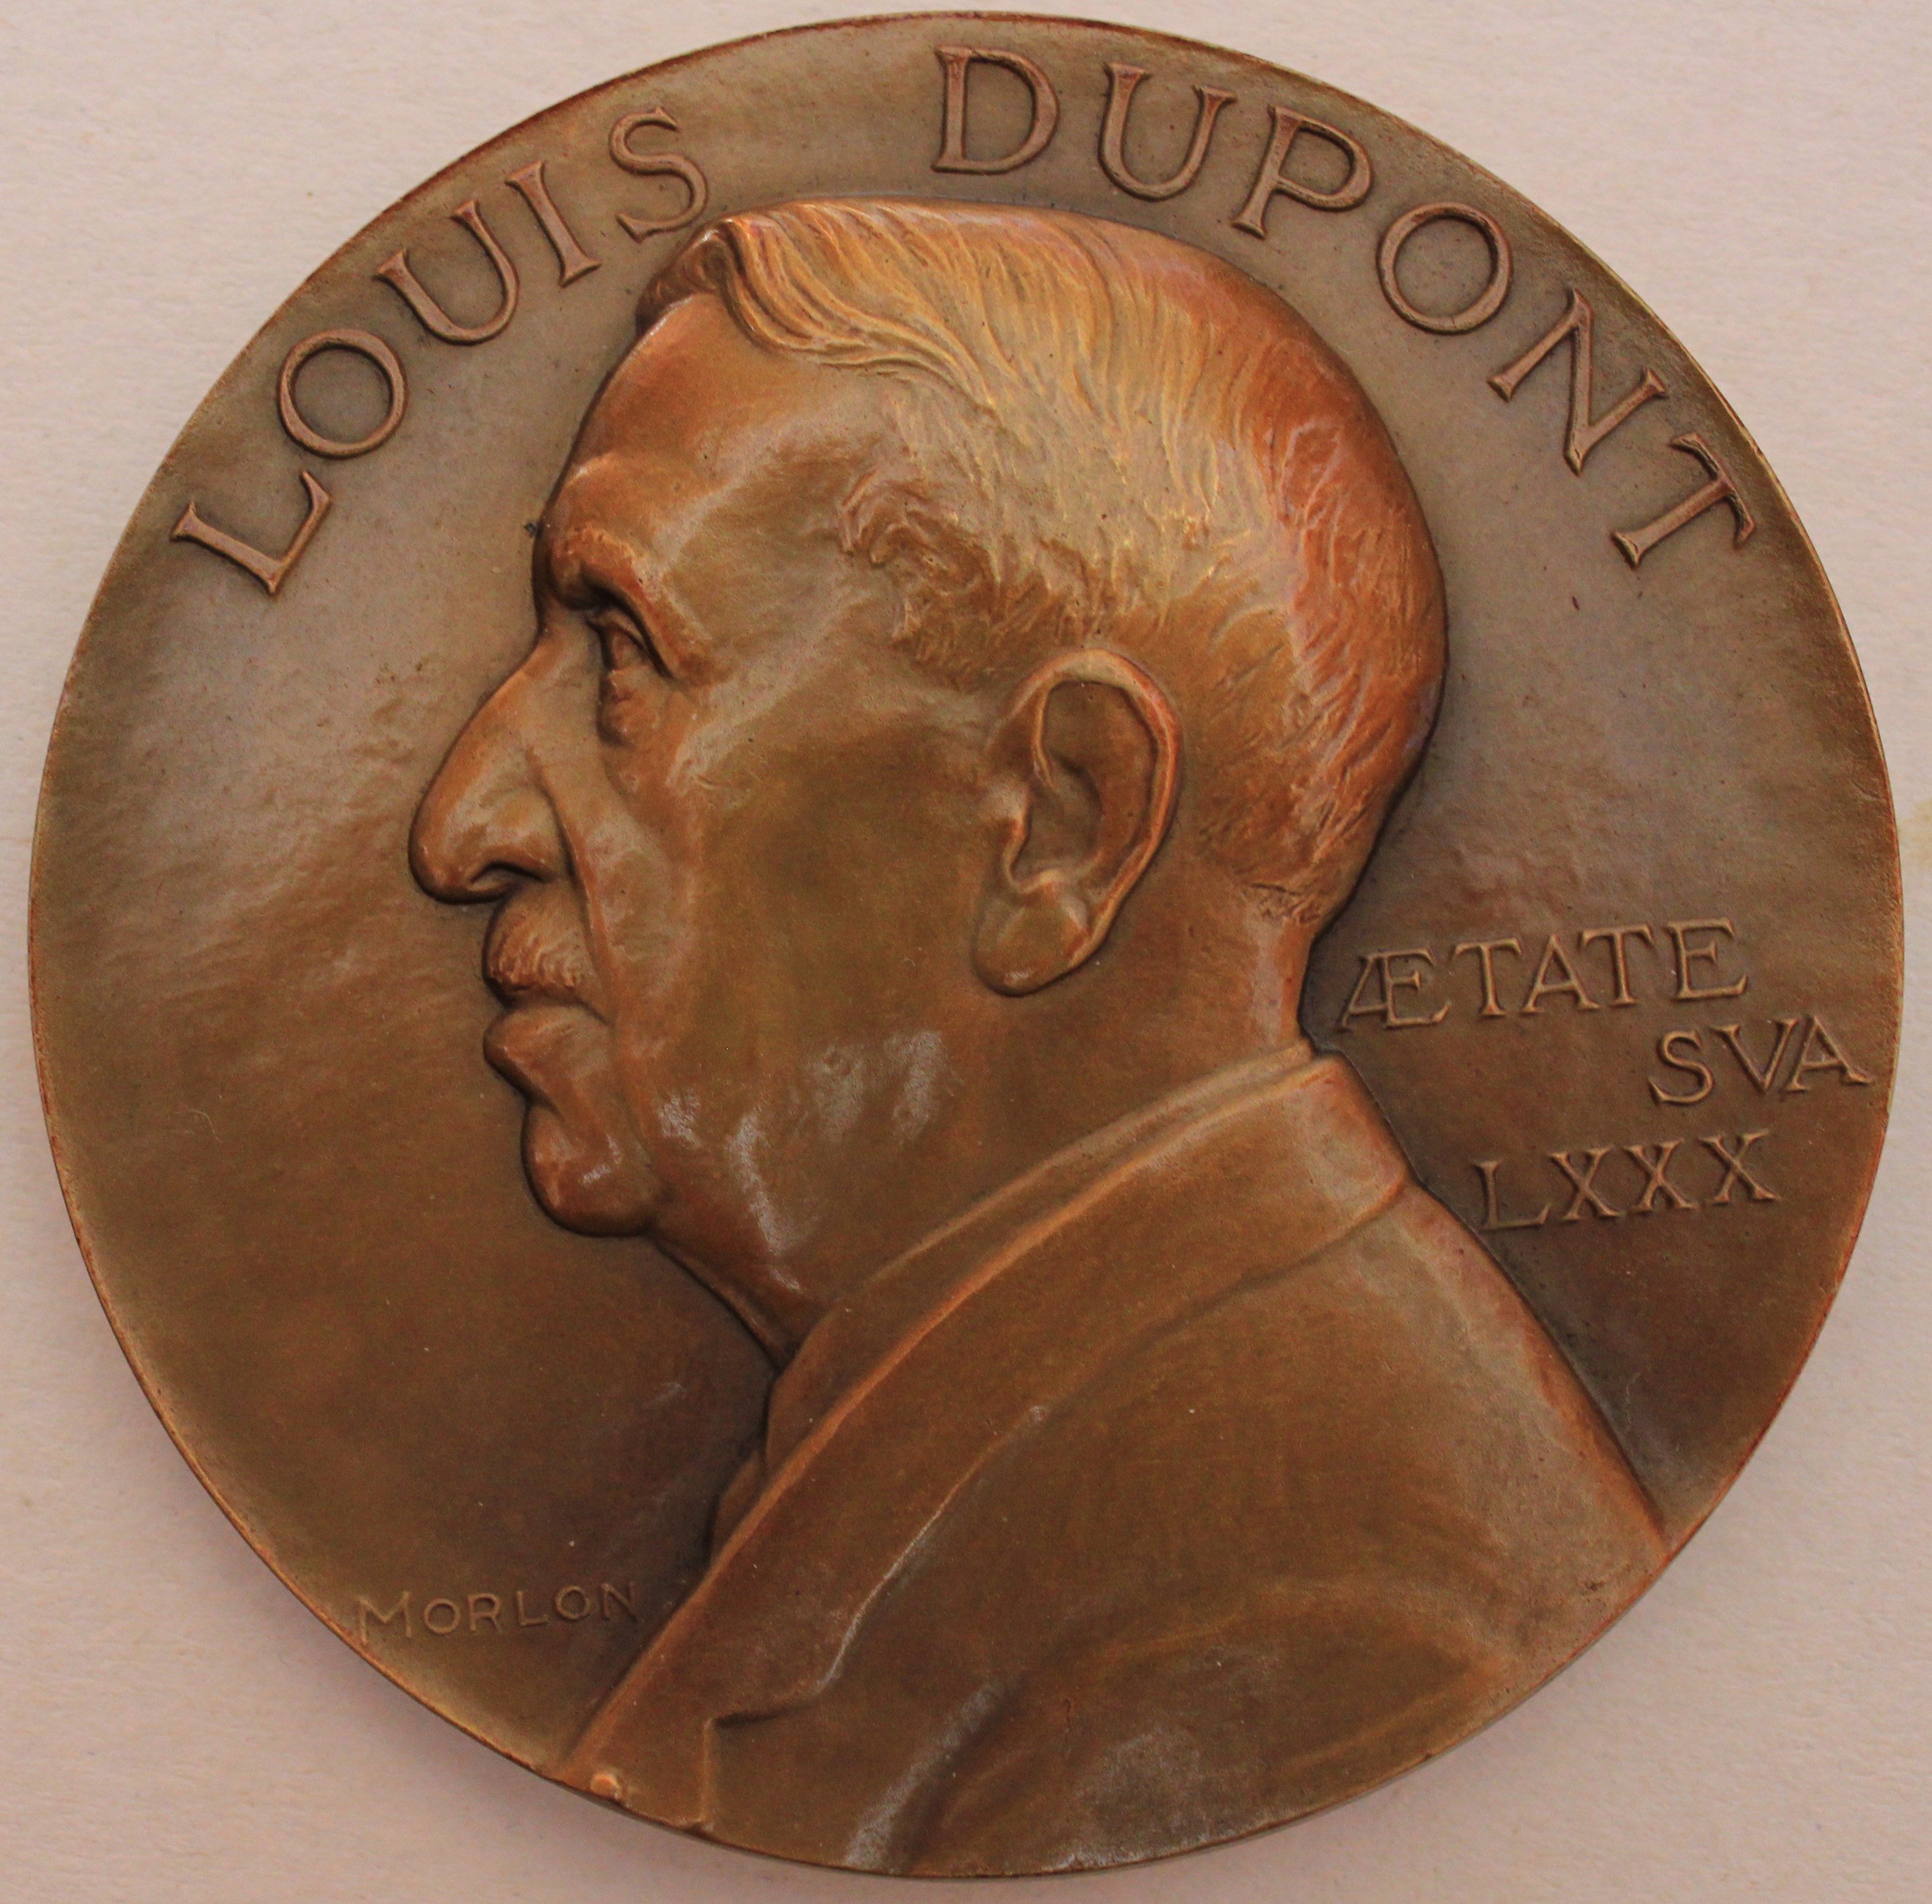 Alexandre Morlon et la médaille de Louis Dupont (1/2)